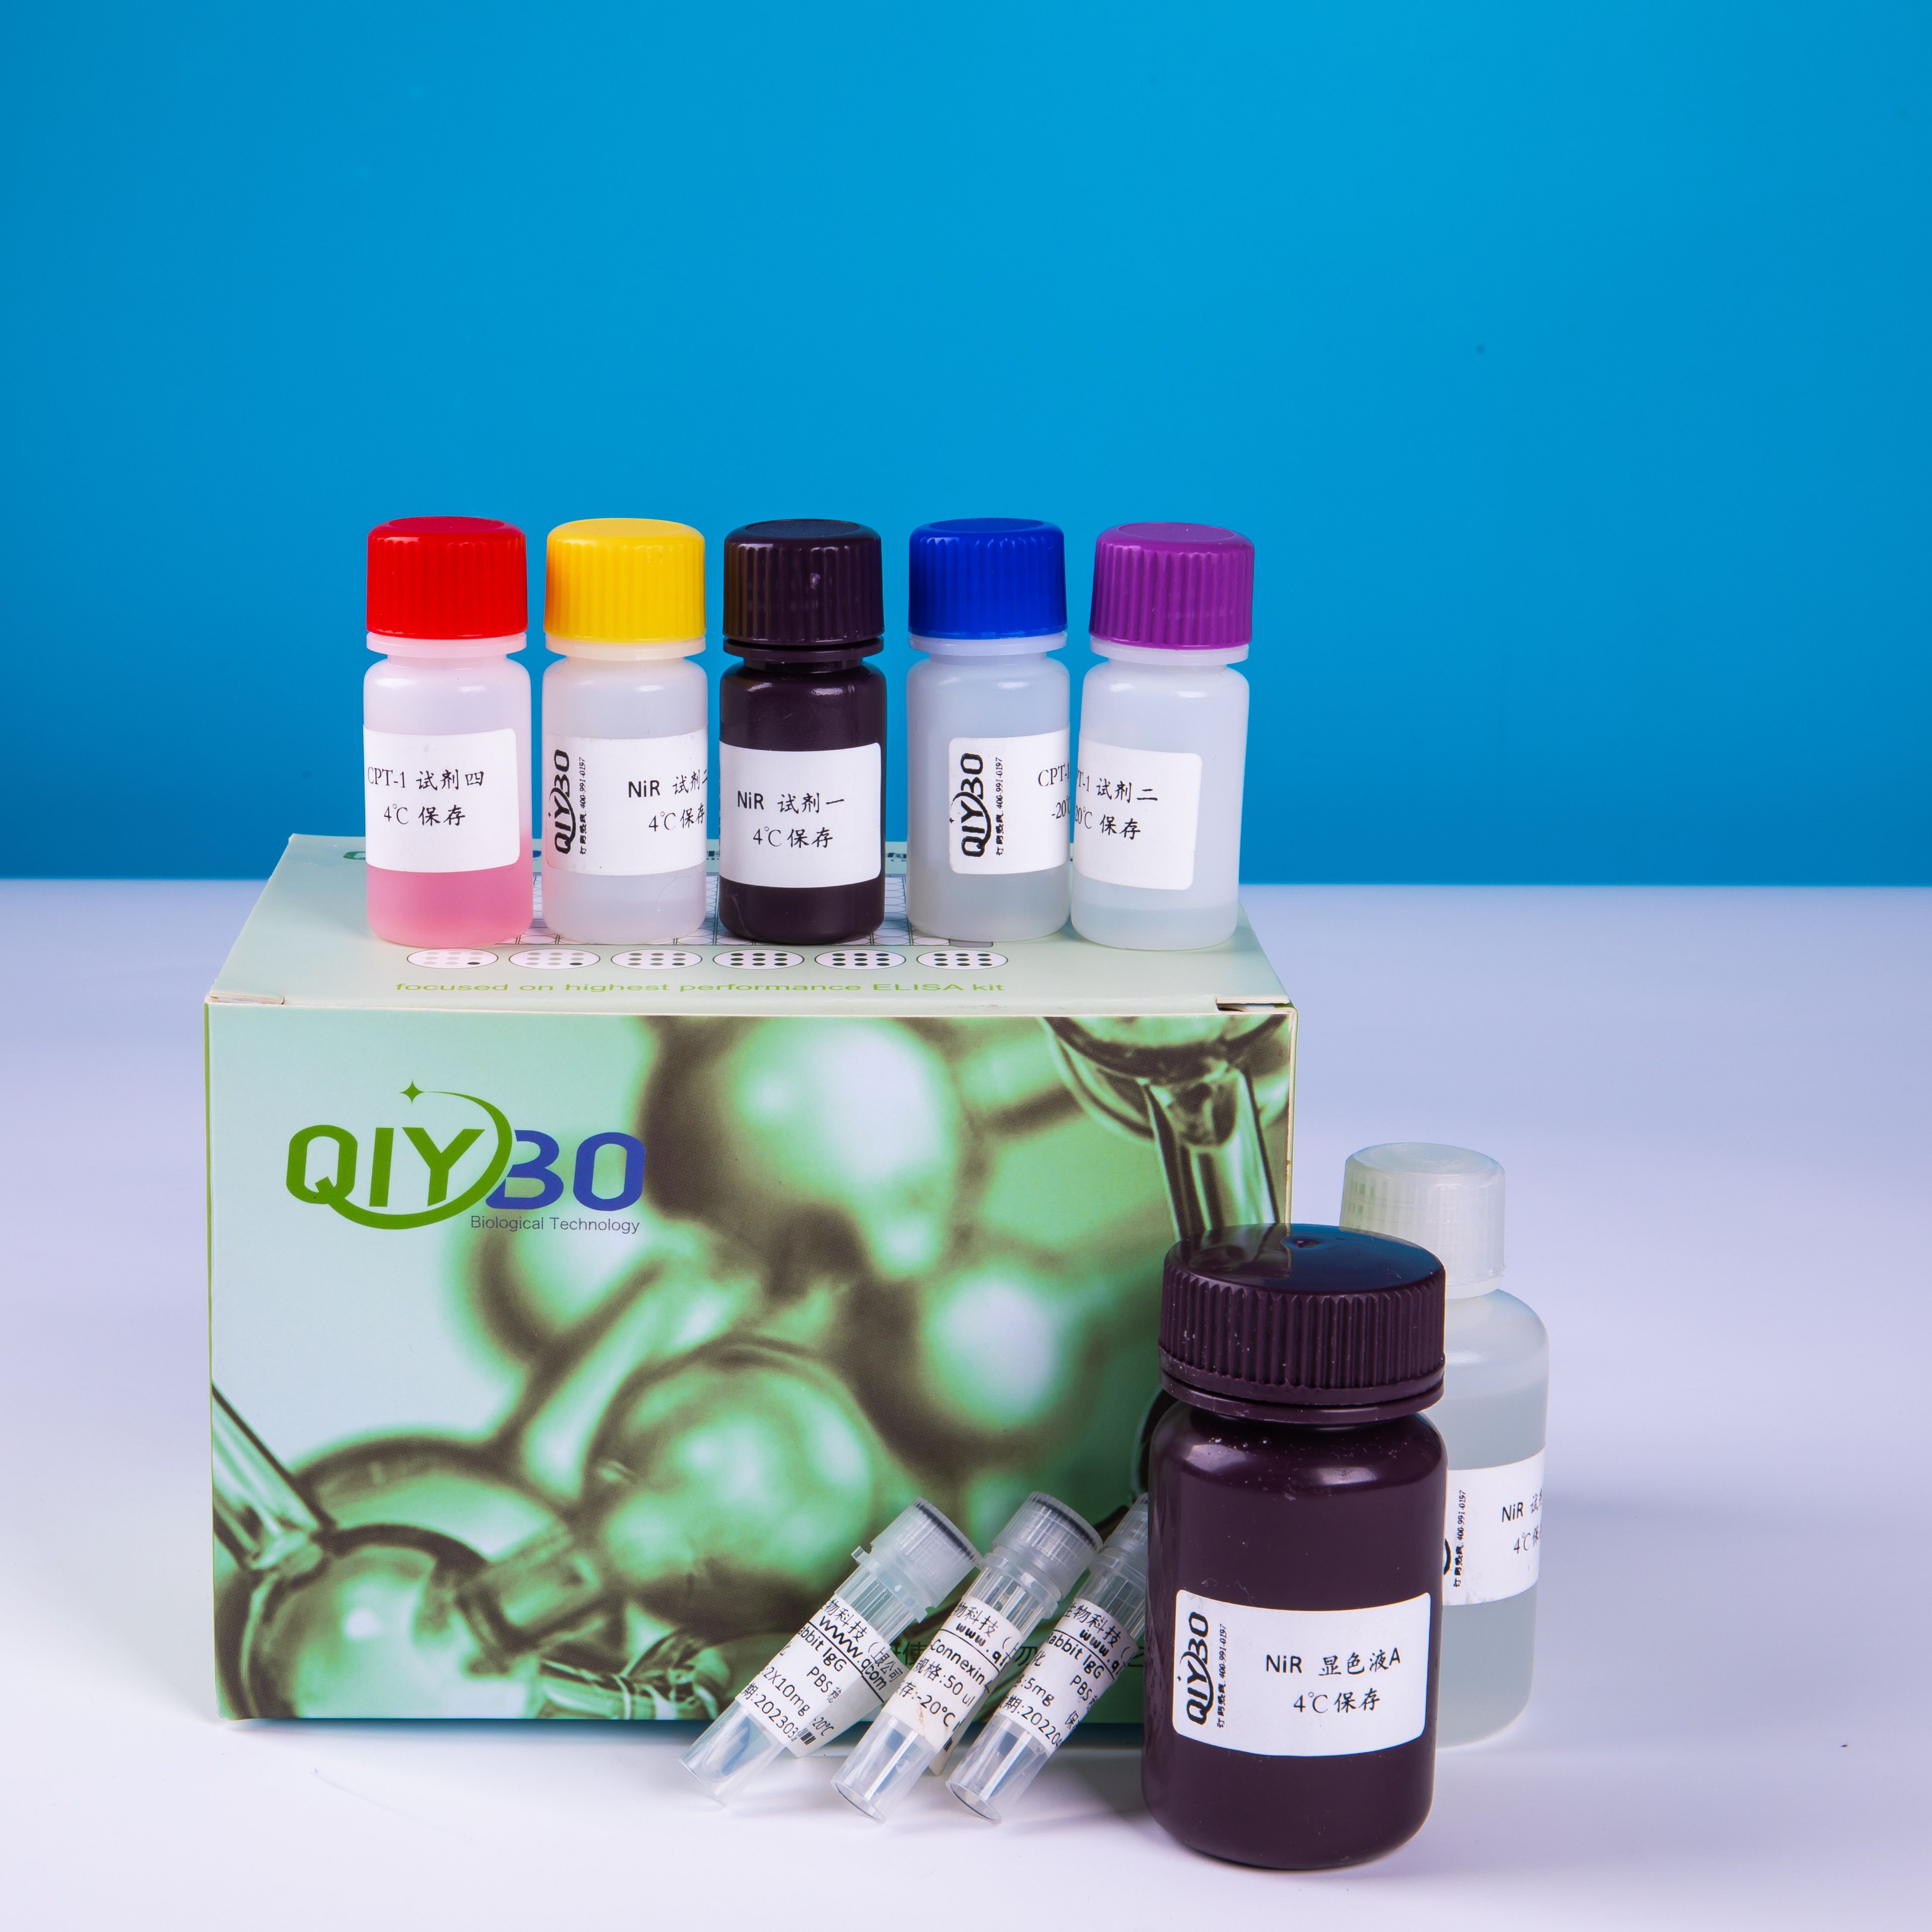 二胺氧化酶(DAO)酶活测定试剂盒